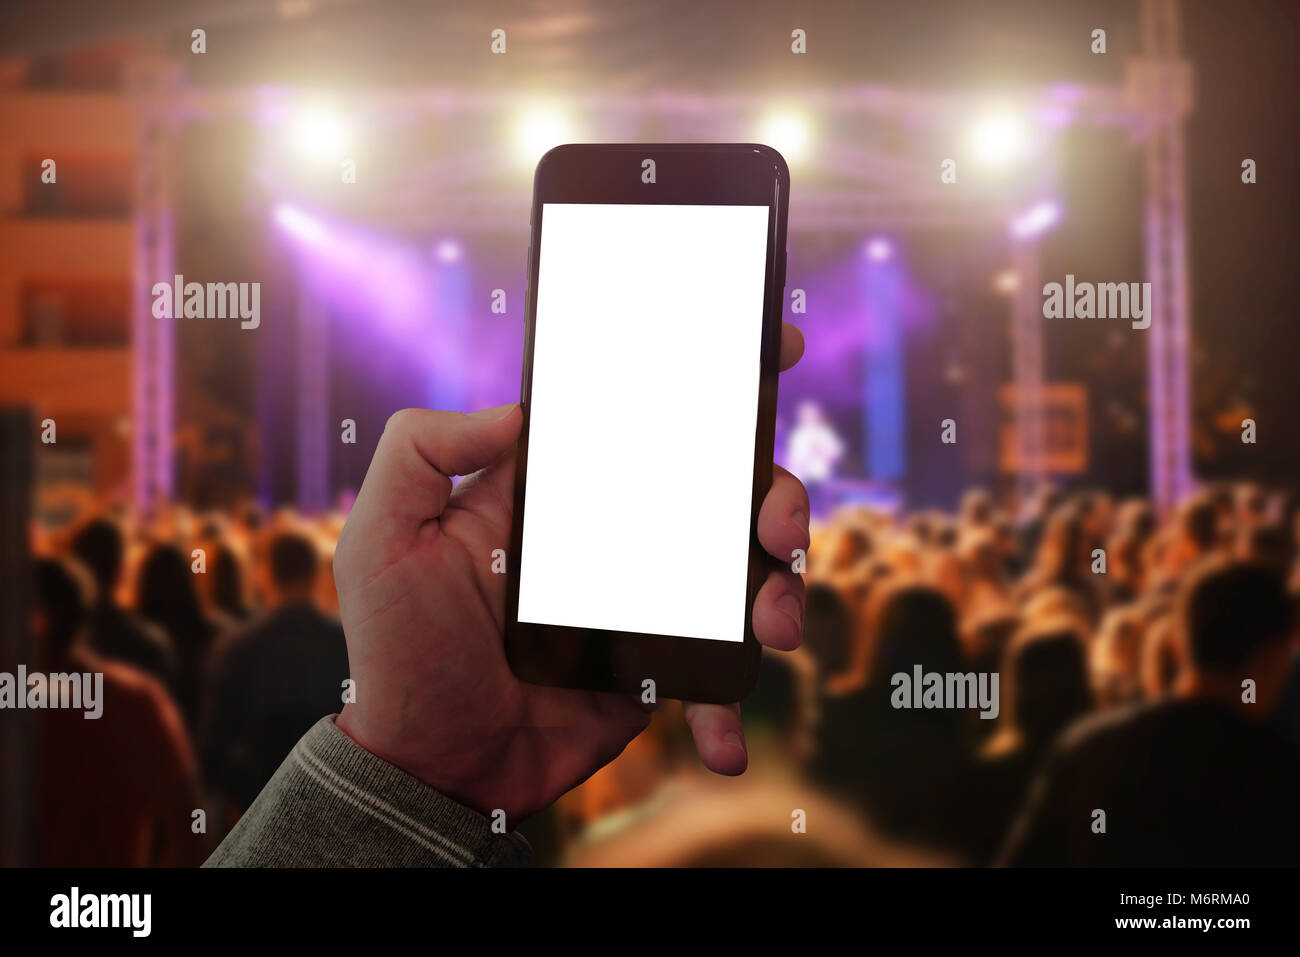 Man hand holding téléphone intelligent et prenant photo ou vidéo. Les concerts foule et lumières dans l'arrière-plan. Banque D'Images